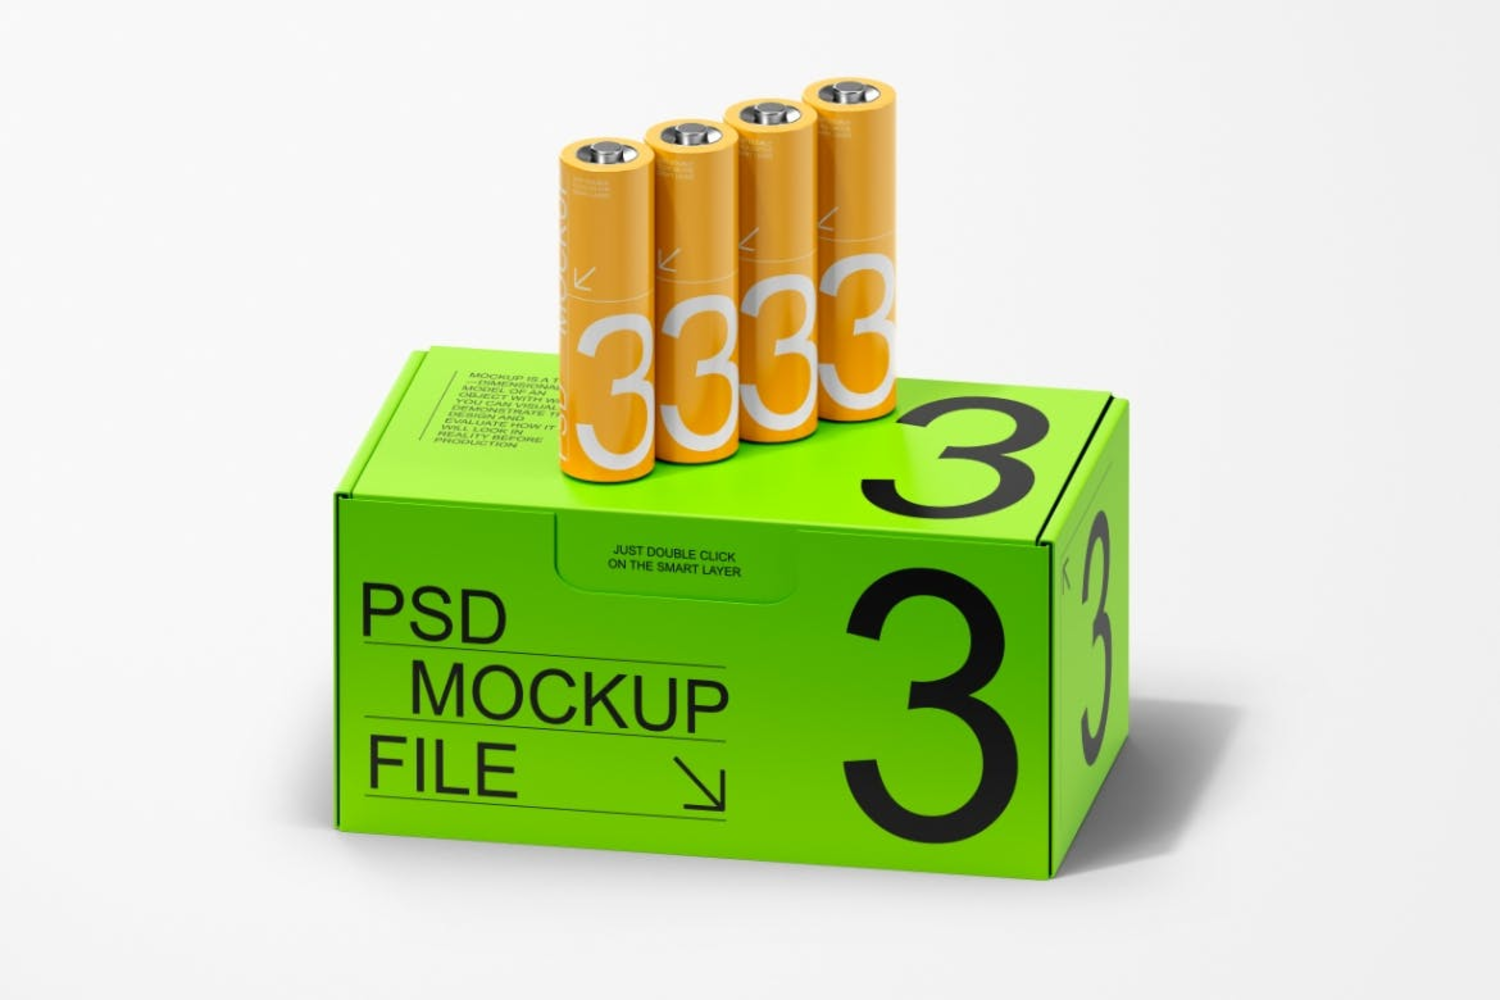 3830 4款电池纸盒时尚产品包装设计贴图ps样机素材展示效果图 Battery Packaging Mockup SetGOOODME.COM